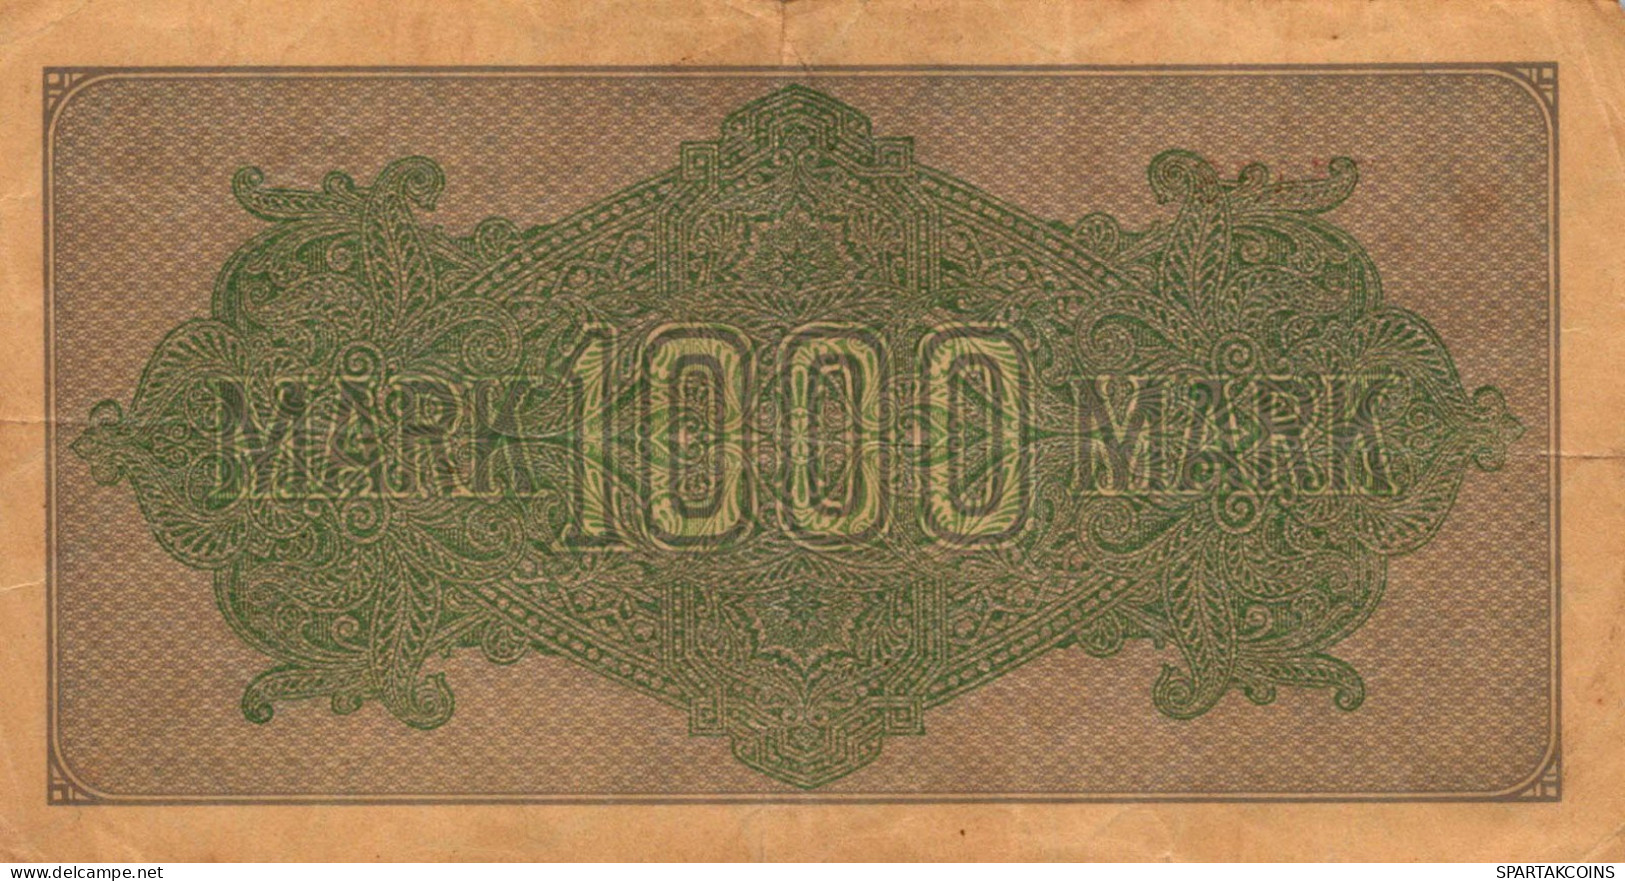 1000 MARK 1922 Stadt BERLIN DEUTSCHLAND Papiergeld Banknote #PL469 - [11] Local Banknote Issues